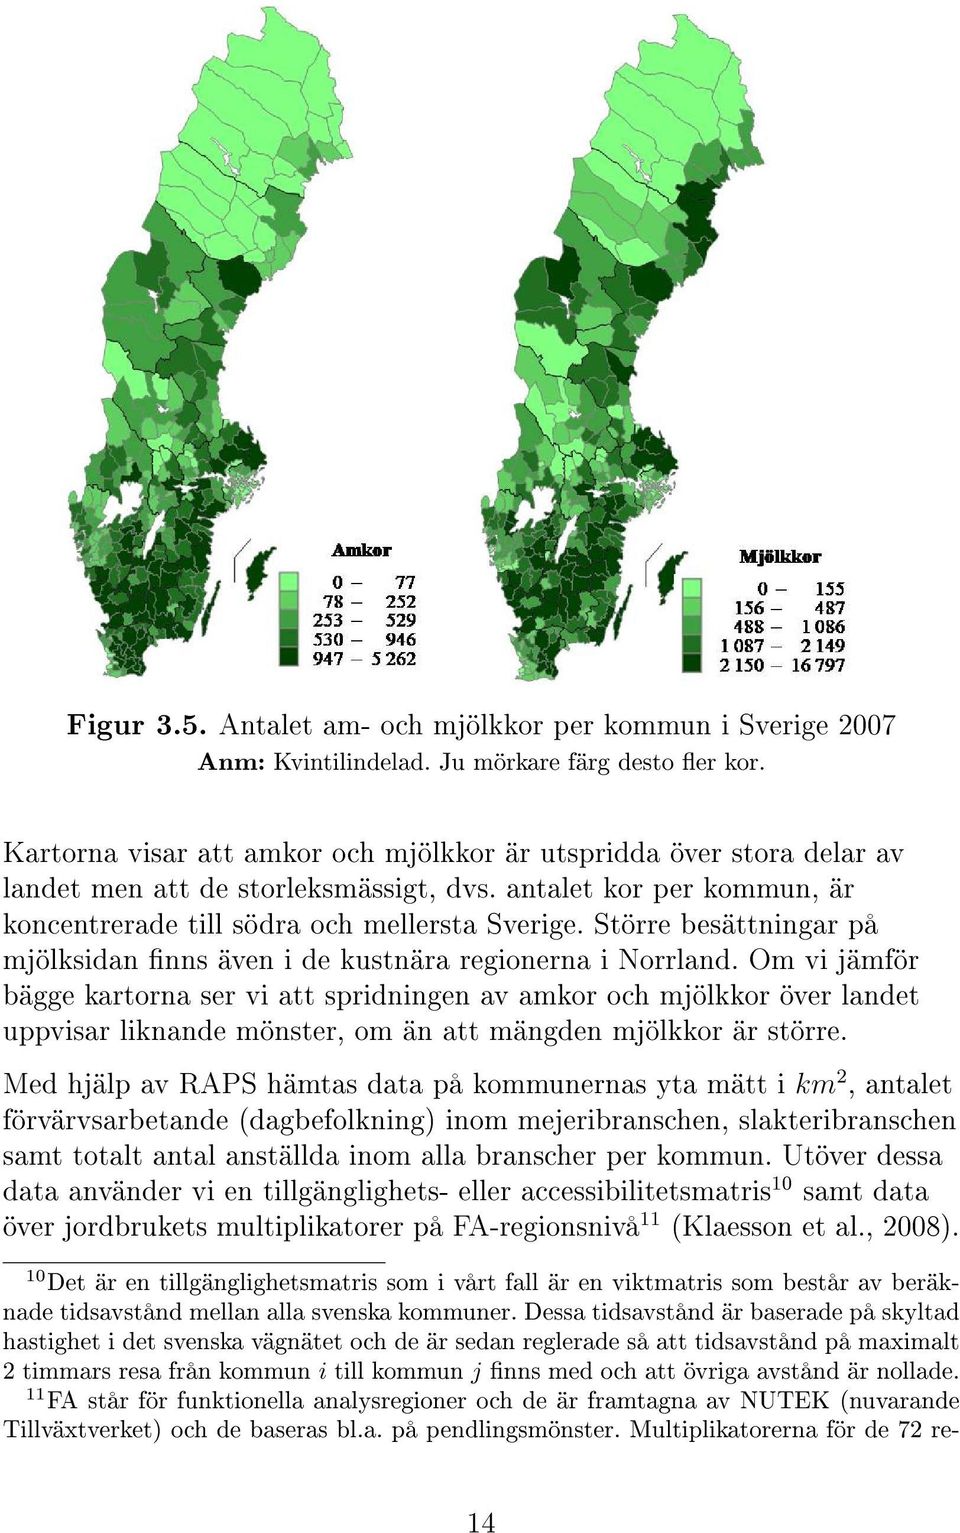 Större besättningar på mjölksidan nns även i de kustnära regionerna i Norrland.